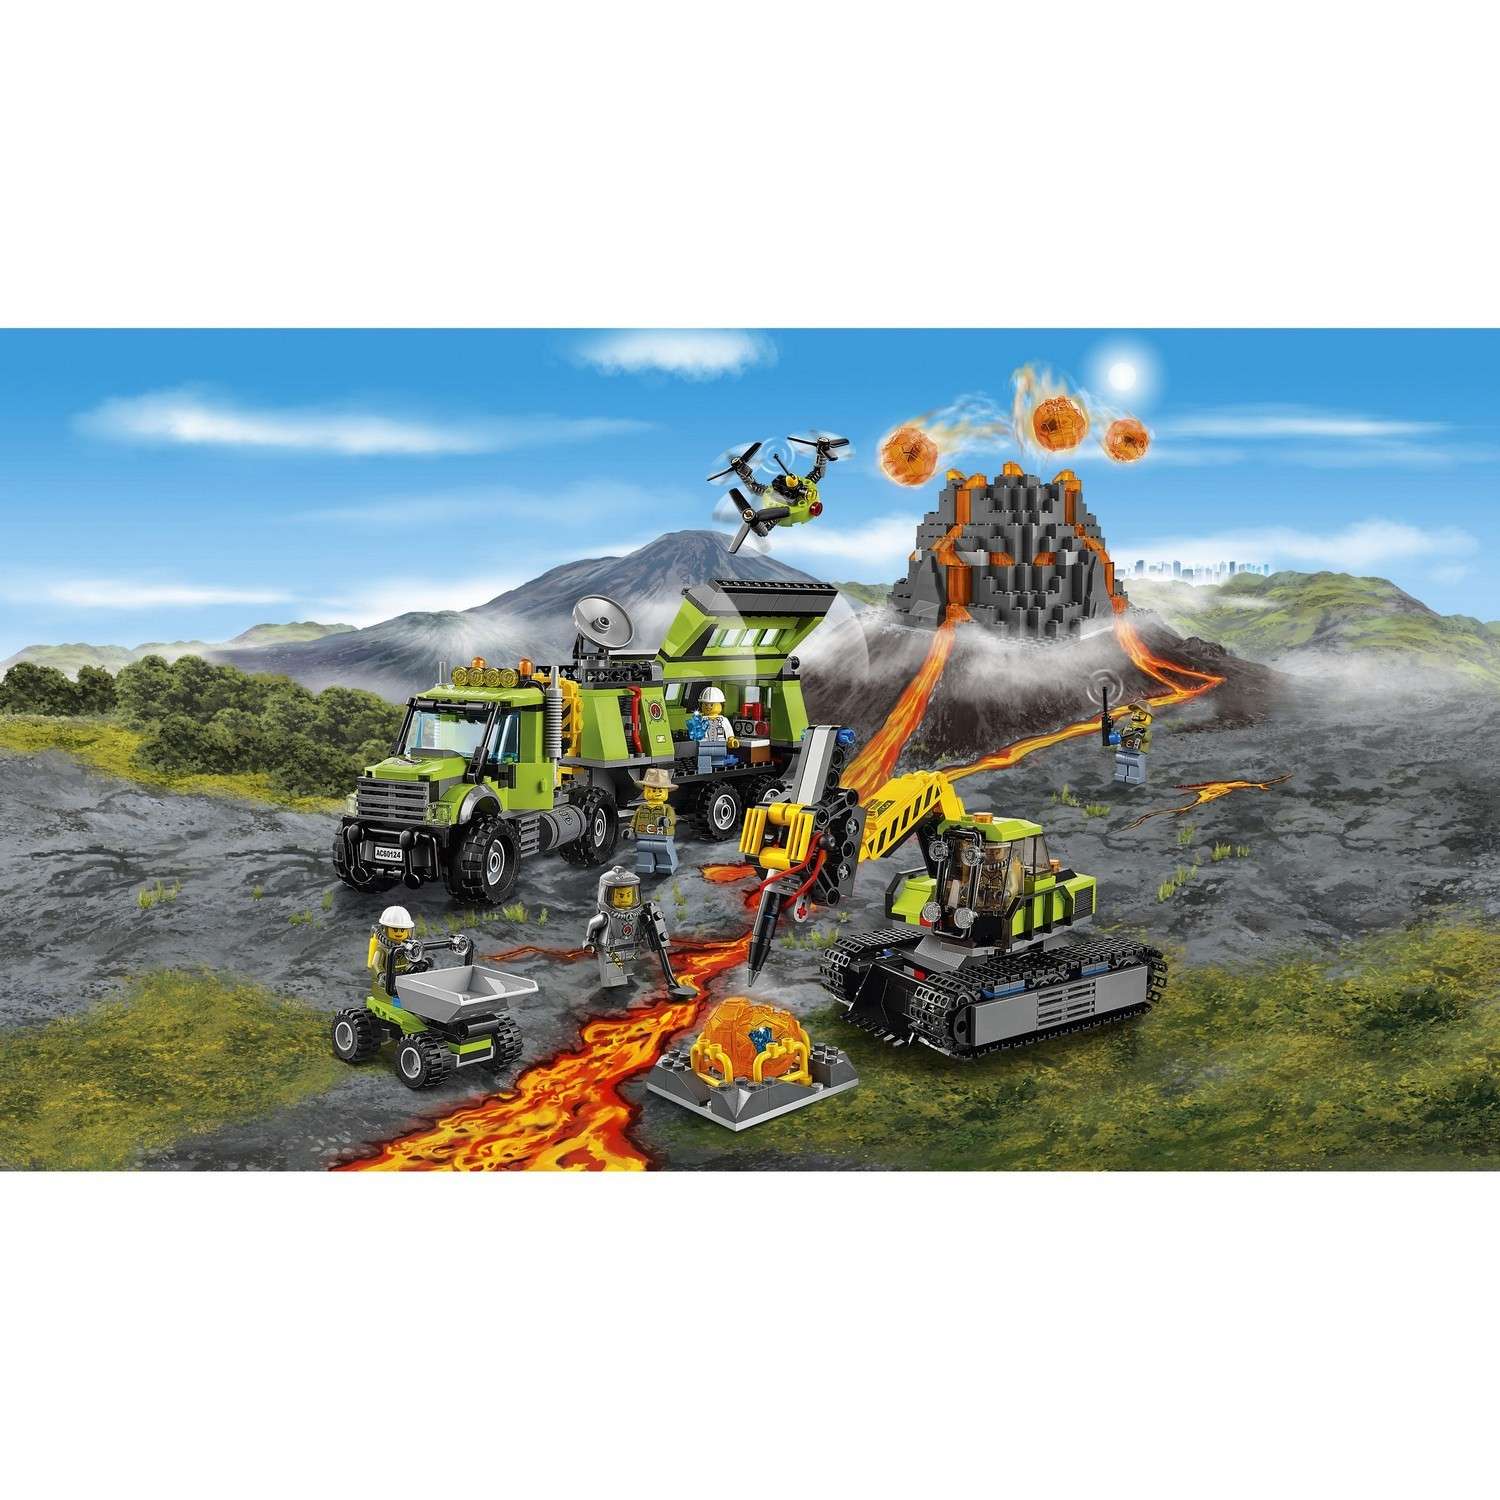 Конструктор LEGO City Volcano Explorers Грузовик Исследователей Вулканов (60121) - фото 4